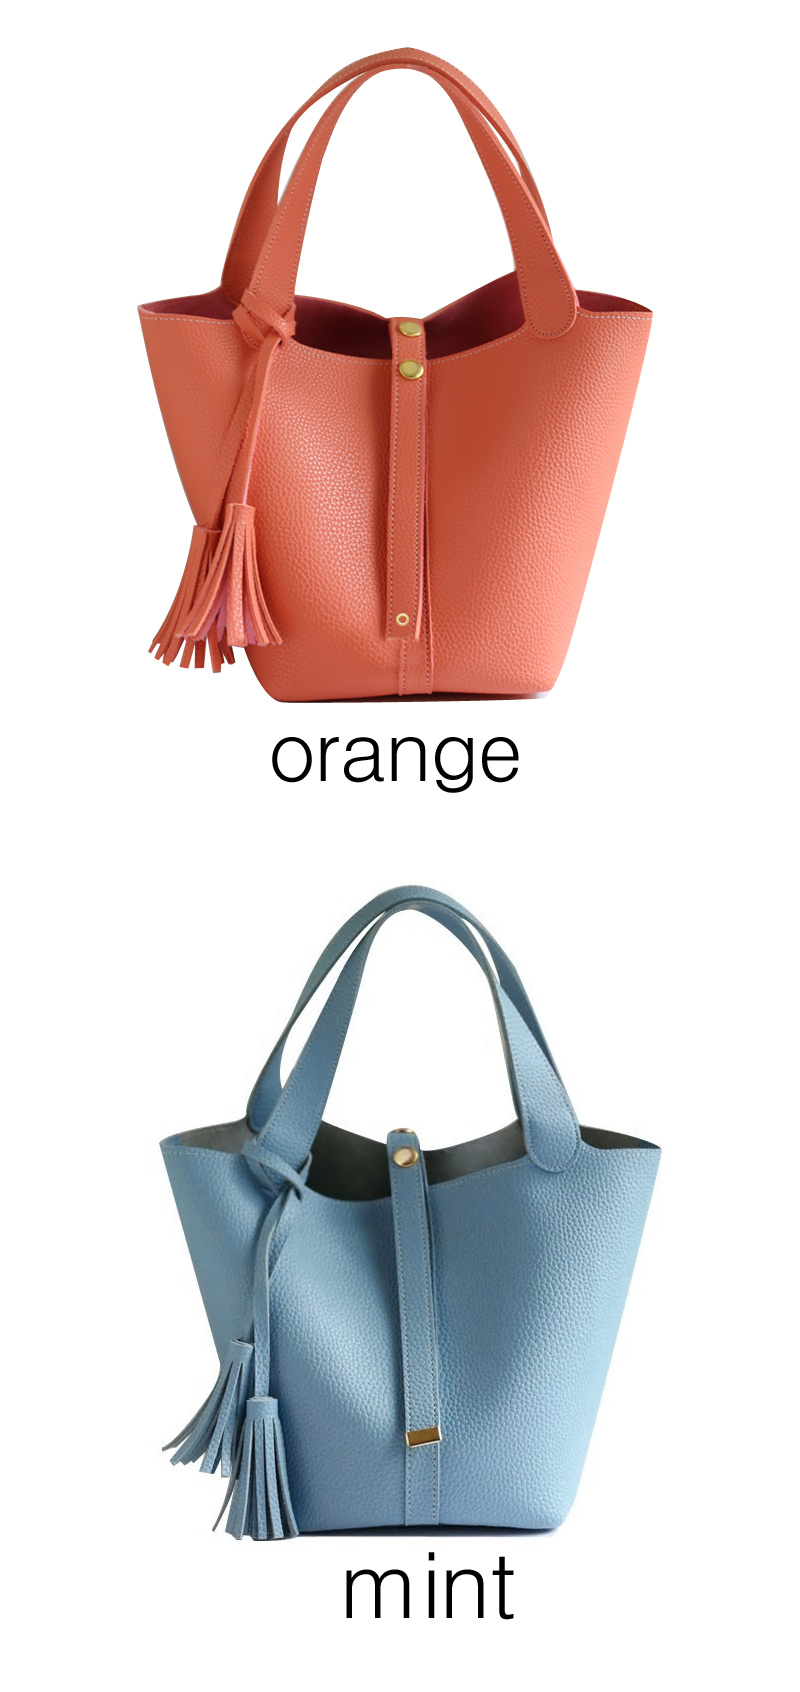  [STORYBAG] NO.485 Combination colors bag, tote bag, daily bag